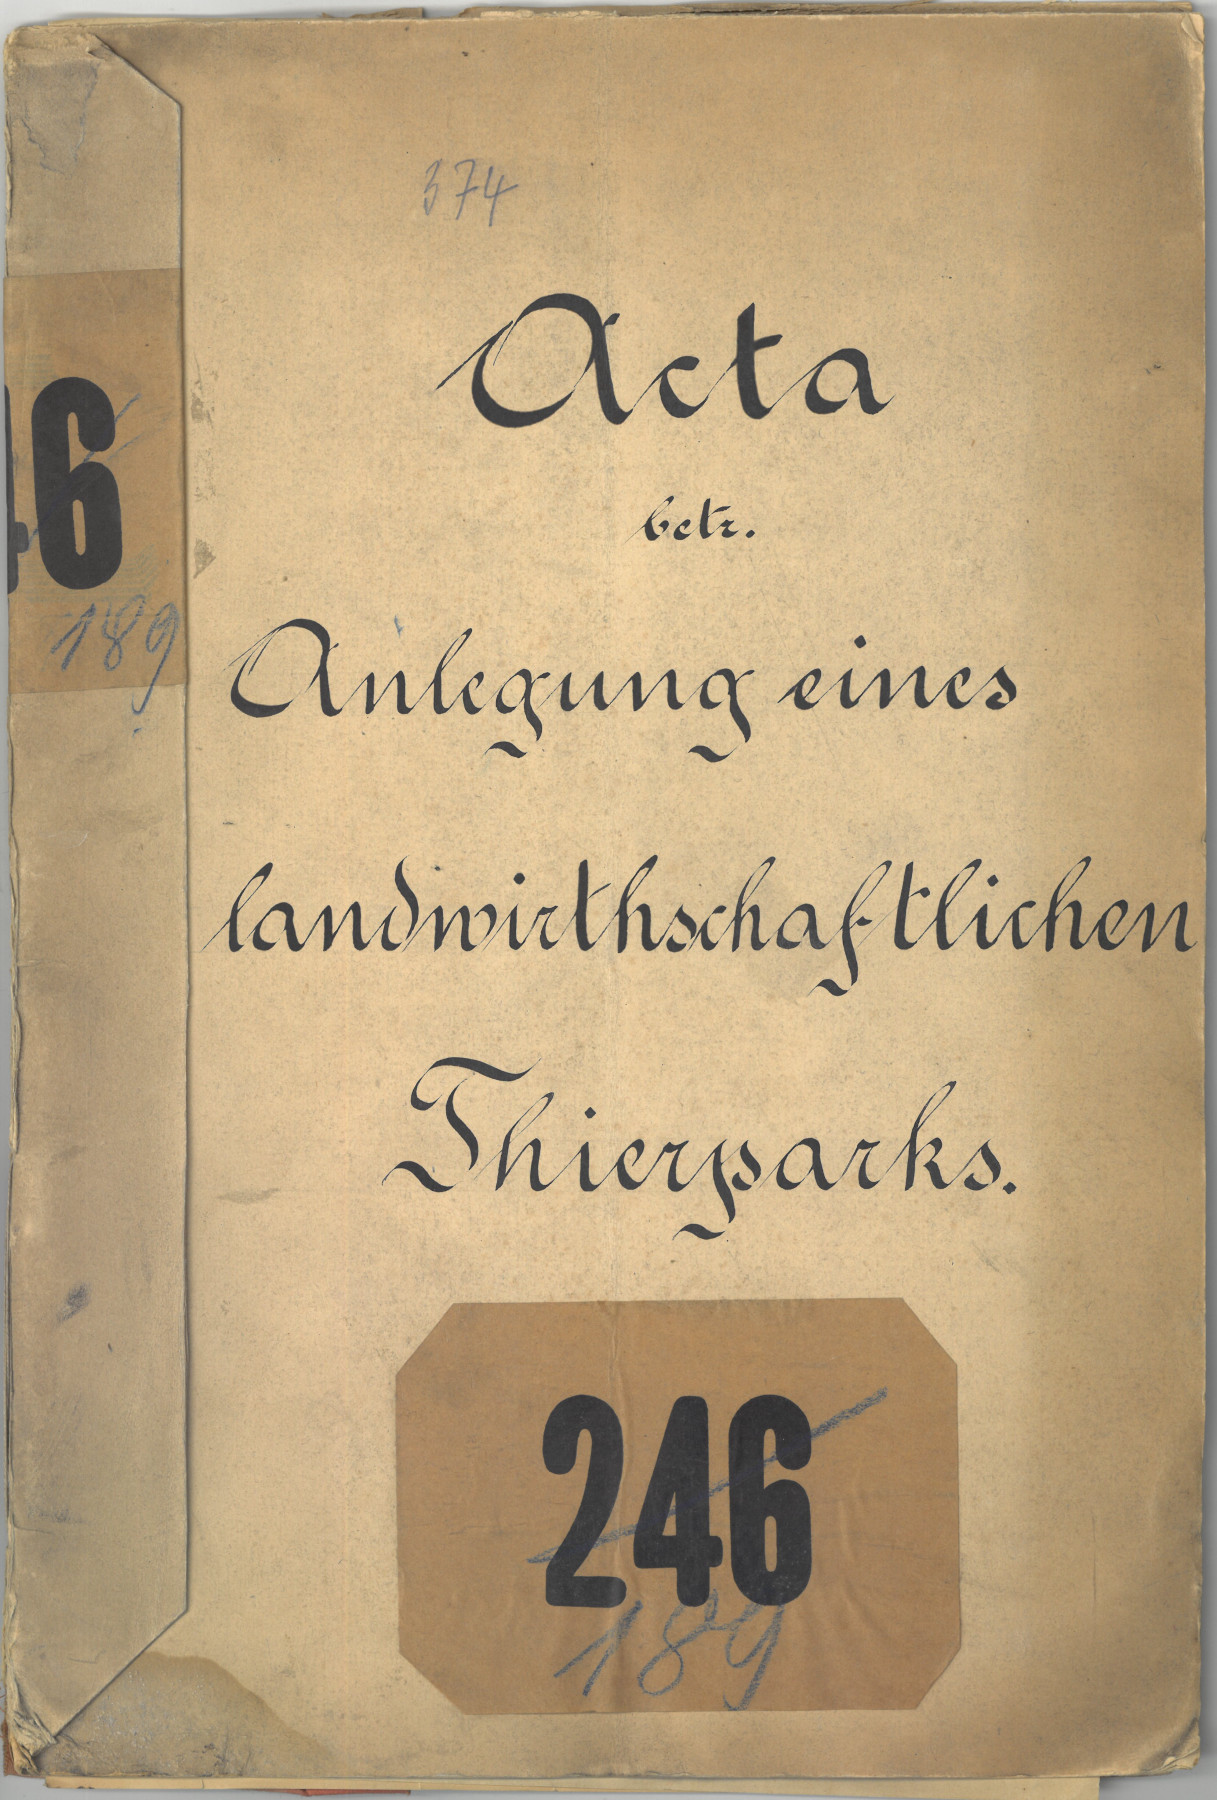 Aktenblatt mit handgeschriebenem Titel: Acta betr. Anlegung eines landwirthschaftlichen Thierparks. Darunter ist die Zahl 246 durchgestrichen, und daneben in blau die Zahl 189 handschriftlich notiert.